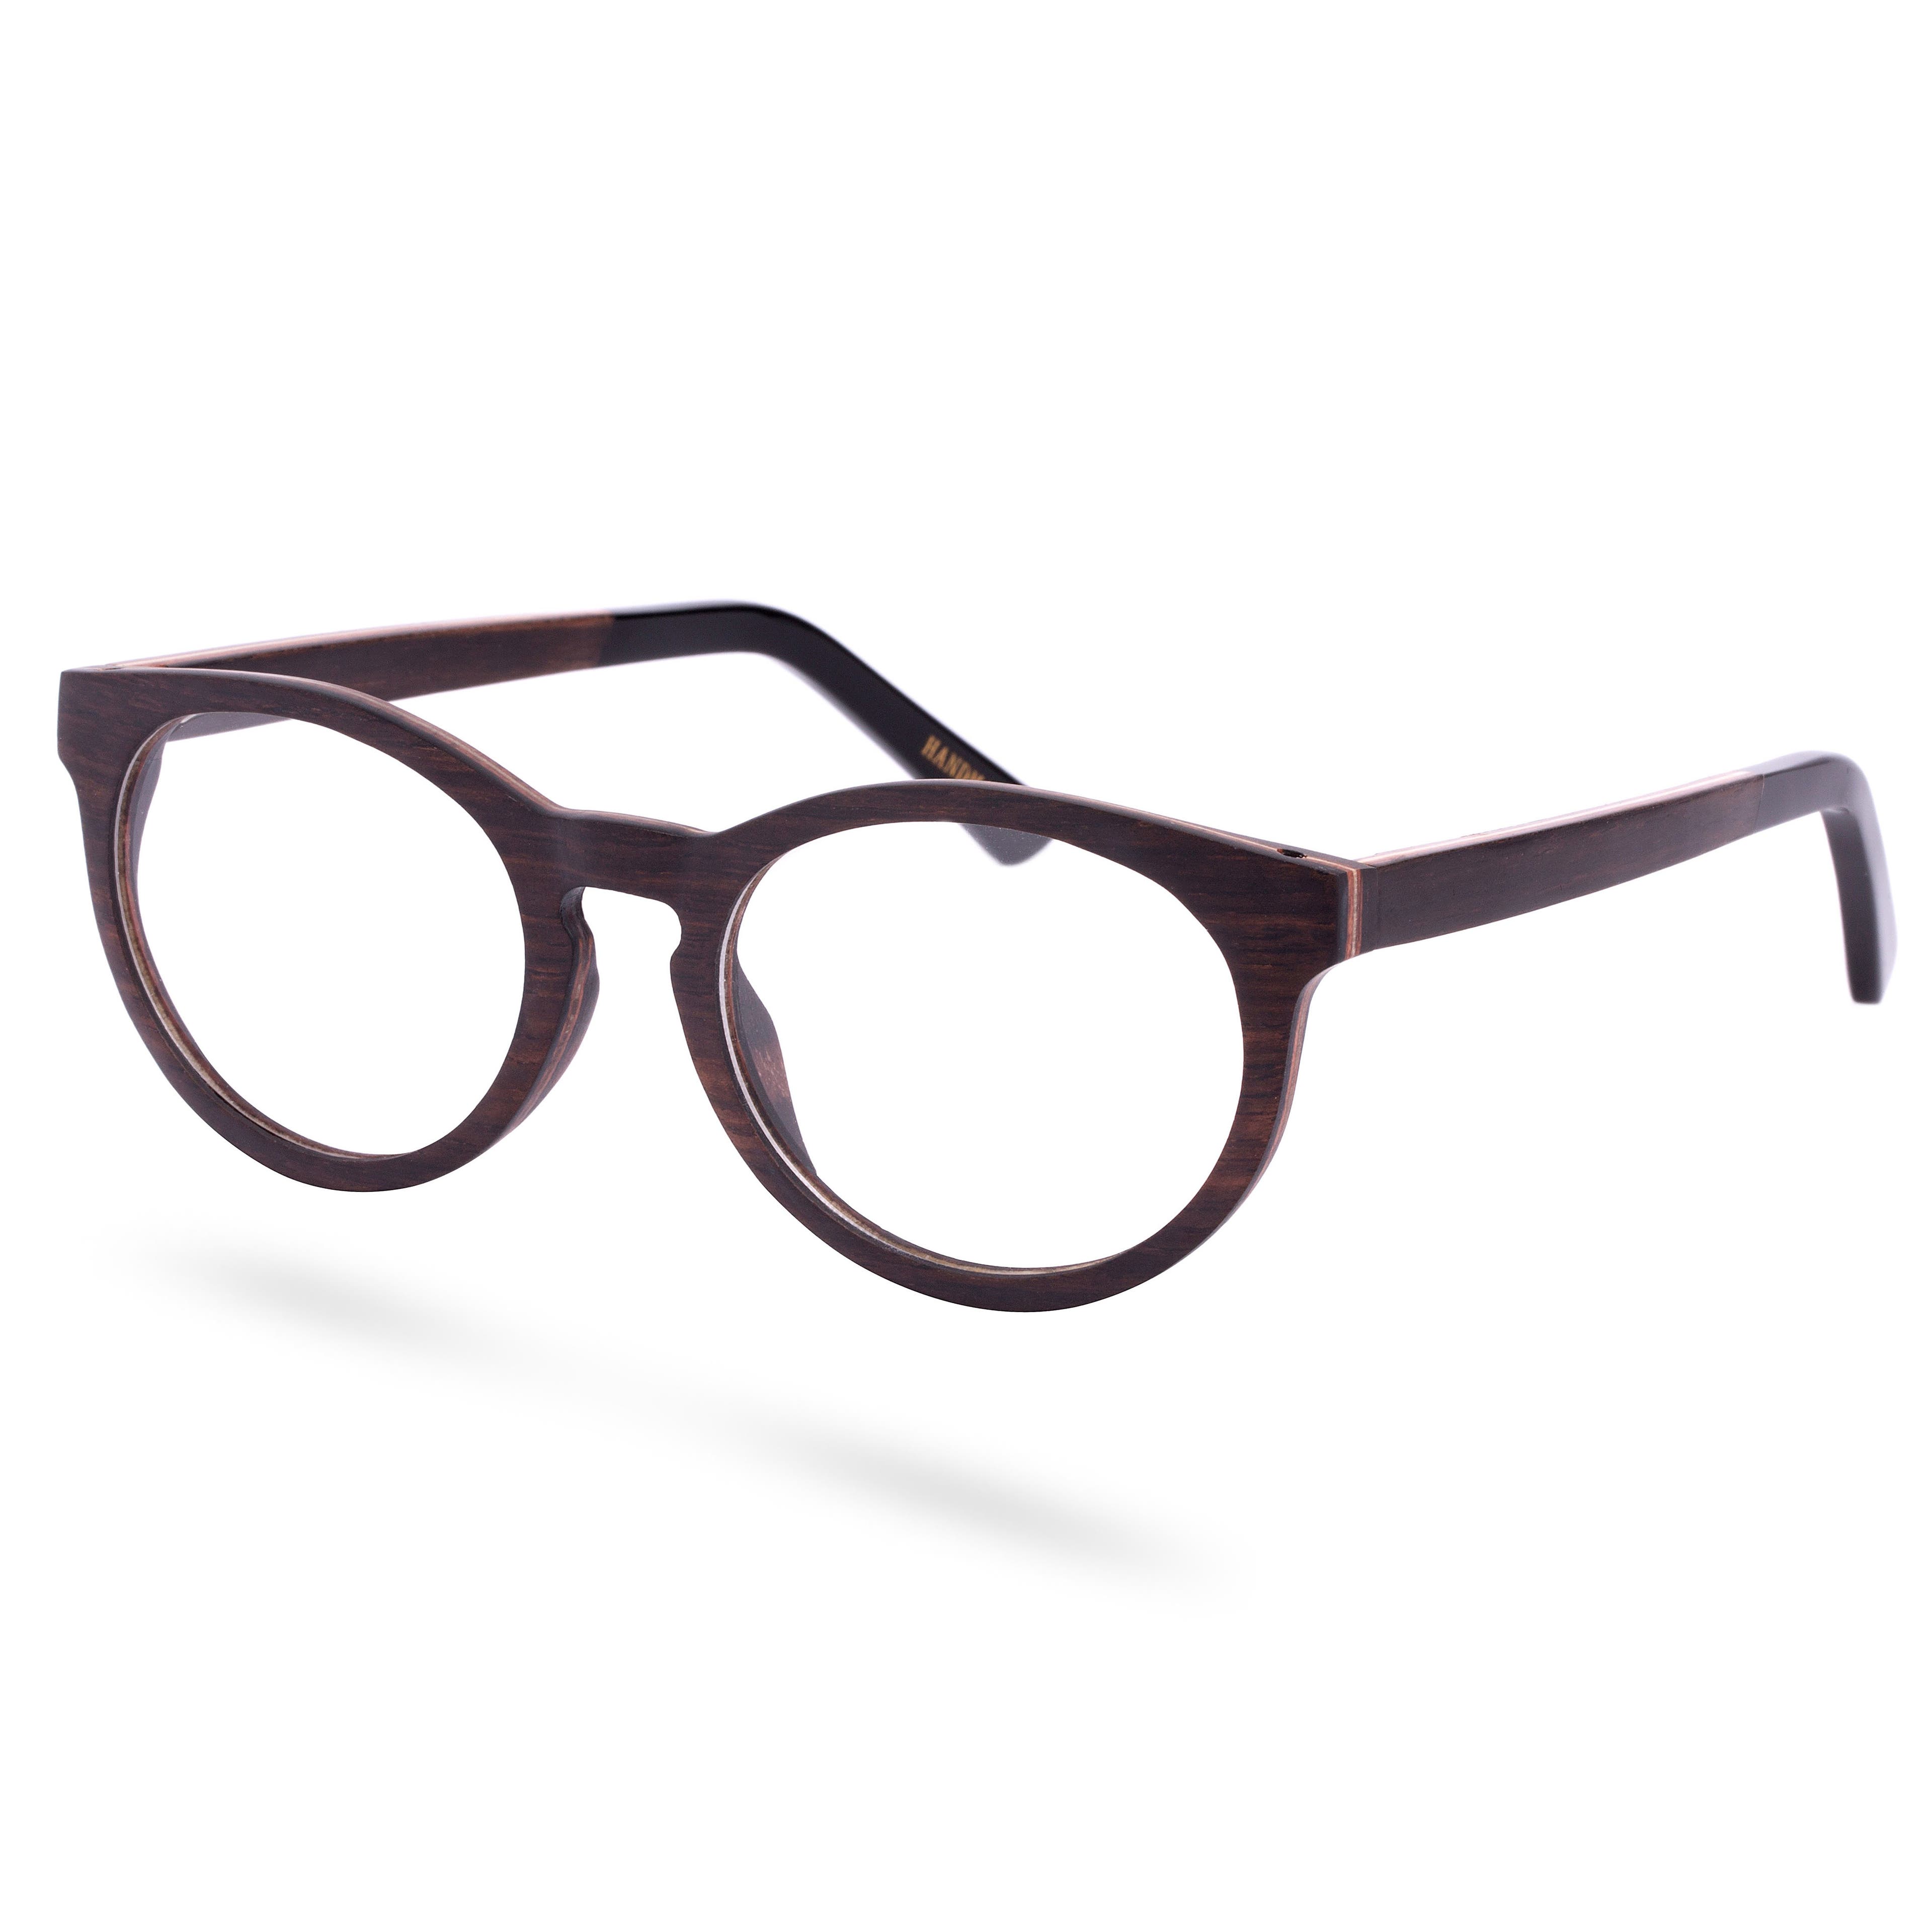 Ebenholz Brille Mit Transparenten Brillengläsern